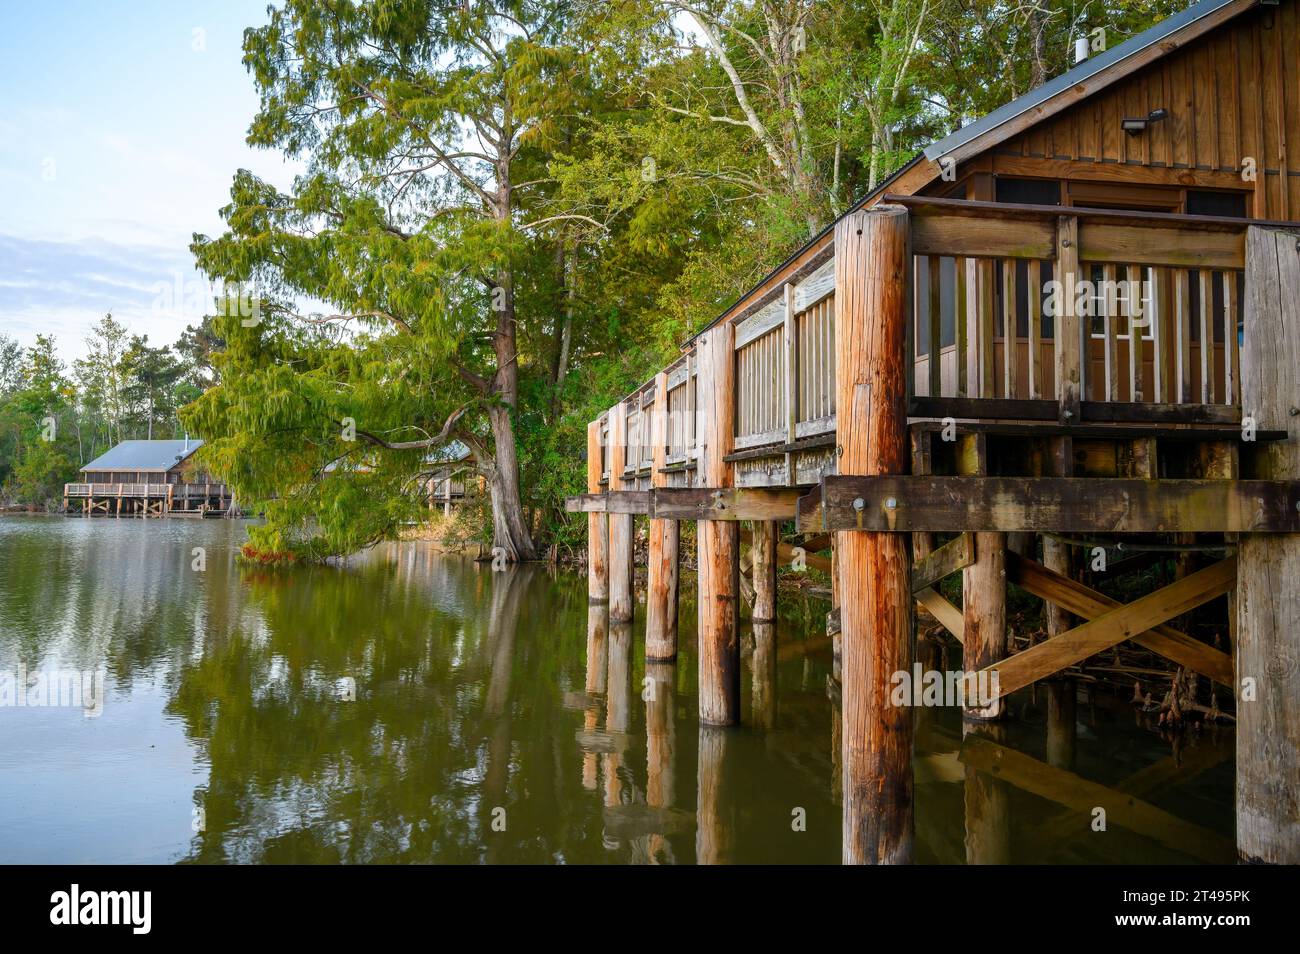 LAKE FAUSSE POINTE, LOUISIANE, USA - 26 OCTOBRE 2023 : cabanes au bord de l'eau au parc d'État du lac fausse Pointe dans le bassin de la rivière Atchafalaya Banque D'Images